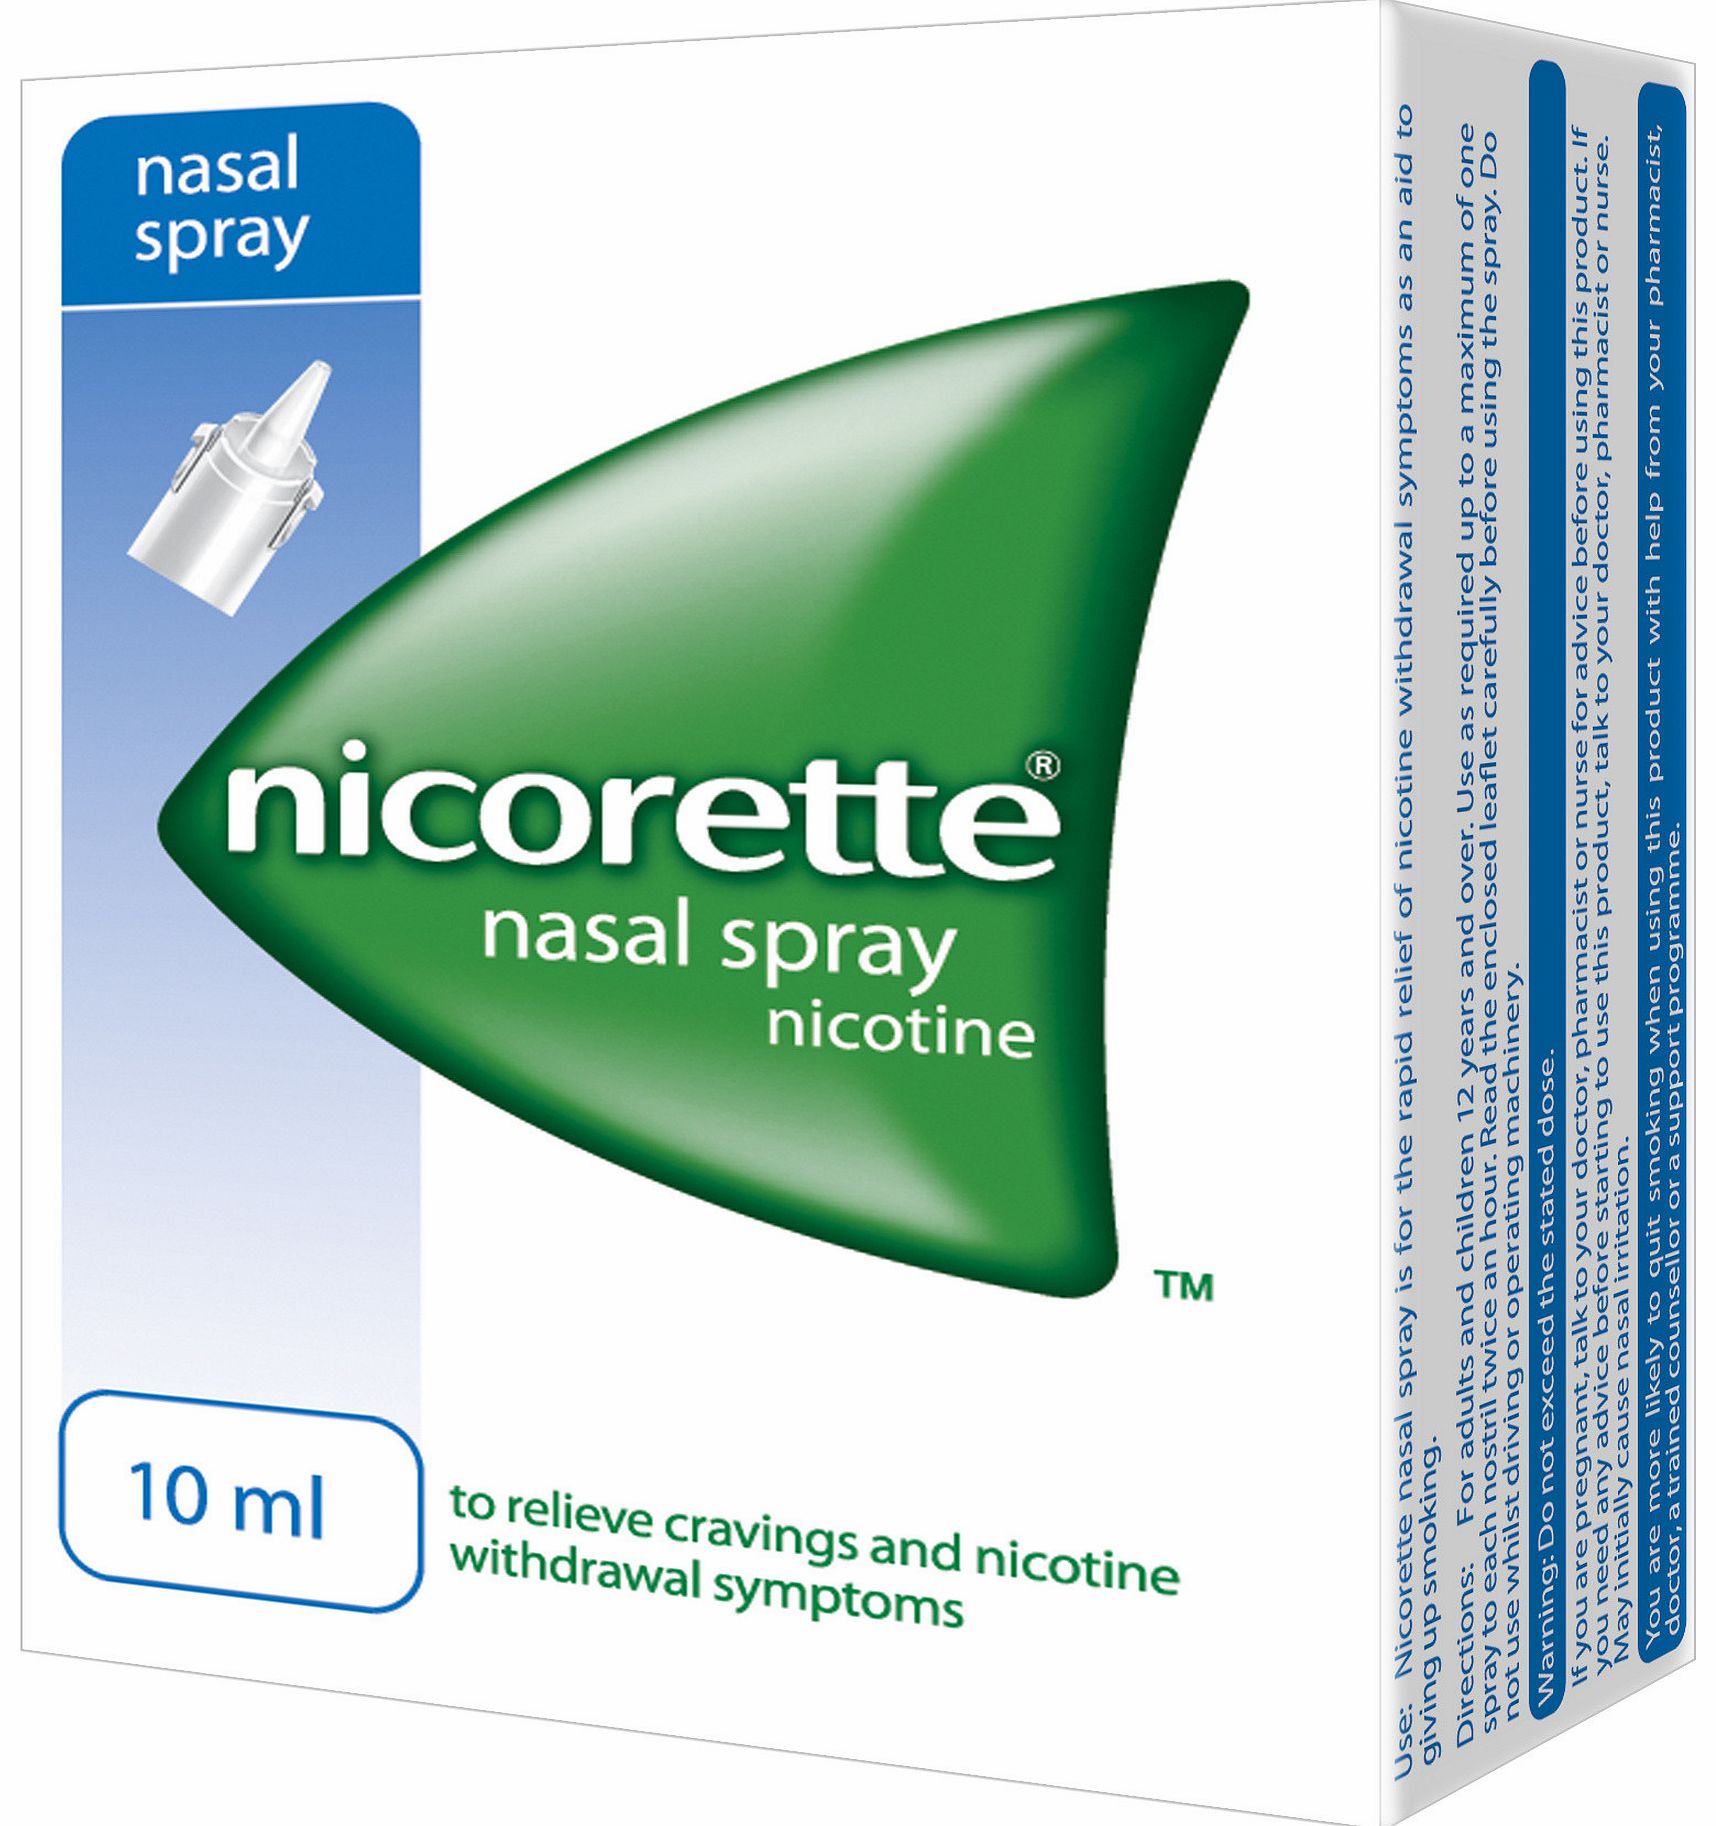 nasal spray health and beauty